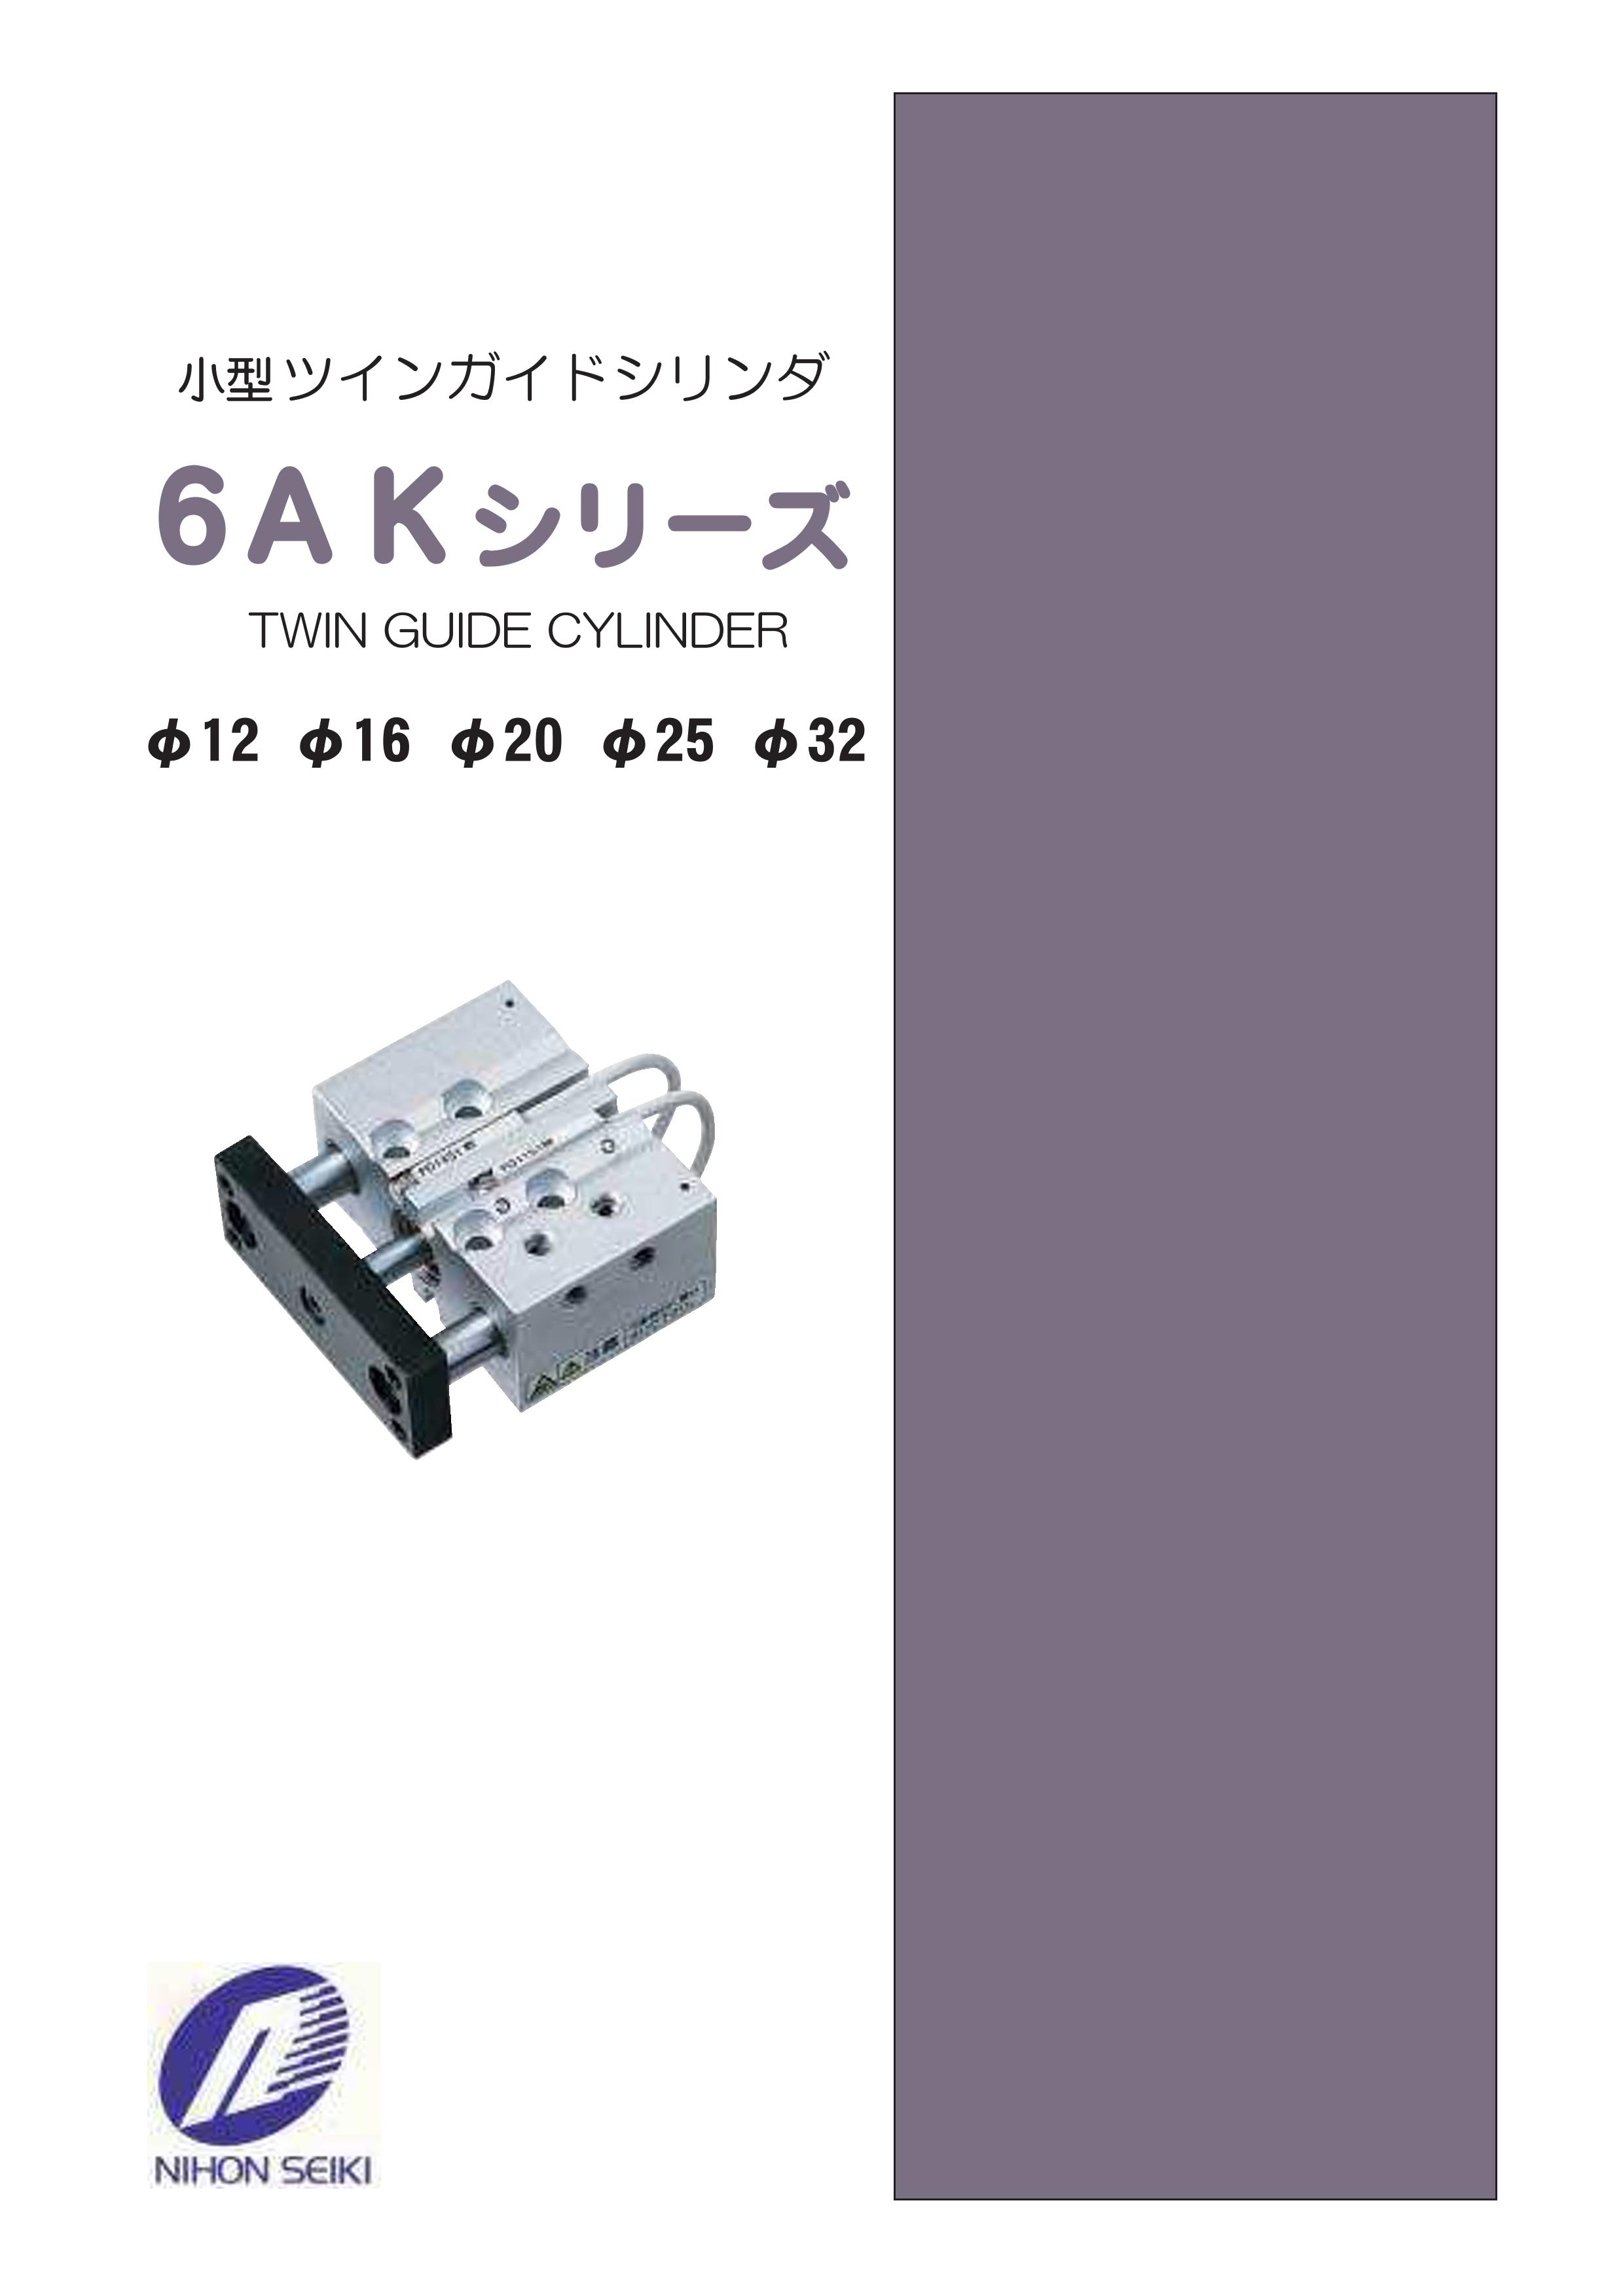 日本精器 高性能エアフィルタ用エレメント3ミクロン(CN3用) CN3E924